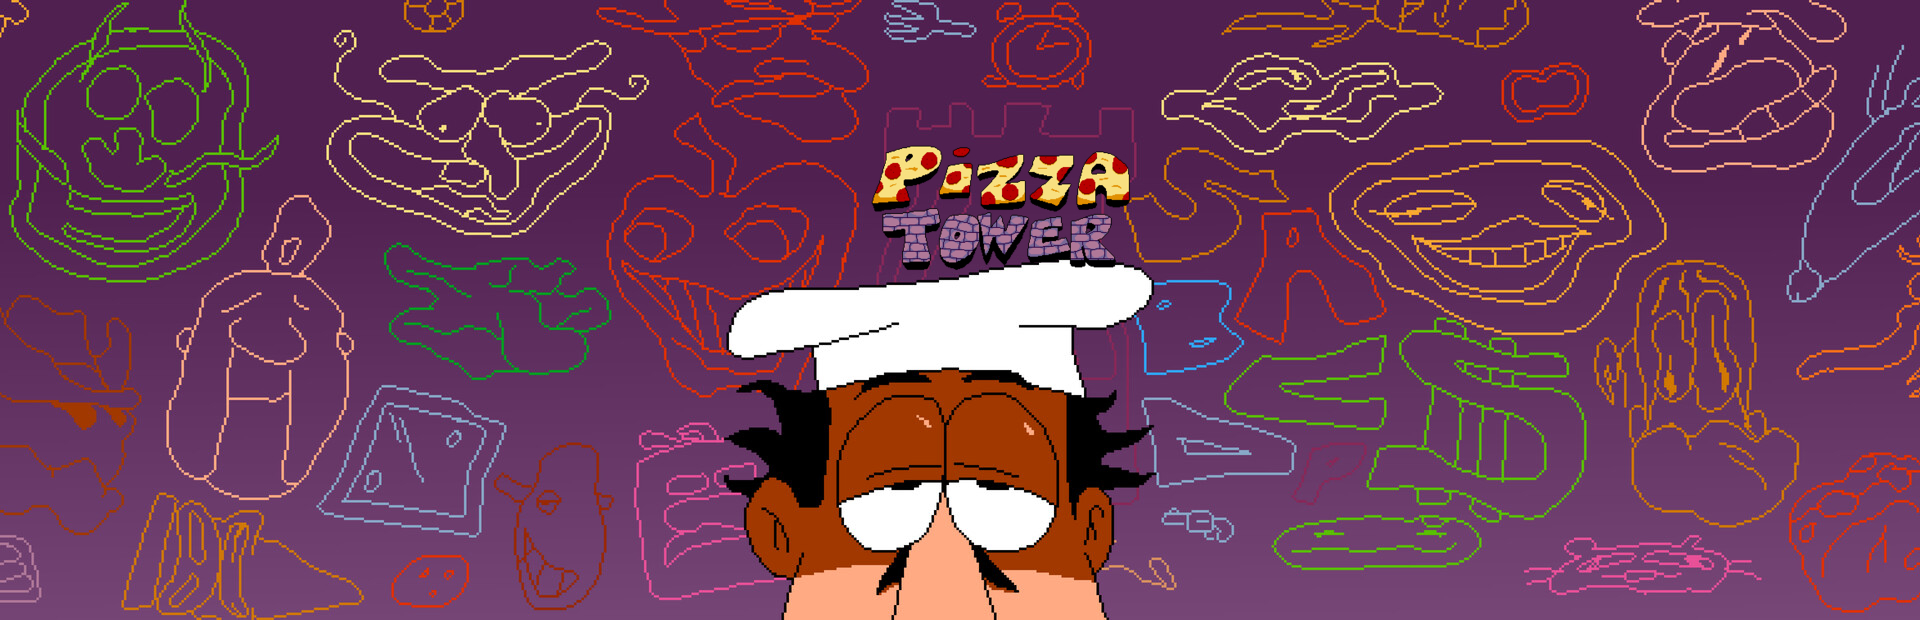 دانلود بازی Pizza Tower برای کامپیوتر | گیمباتو